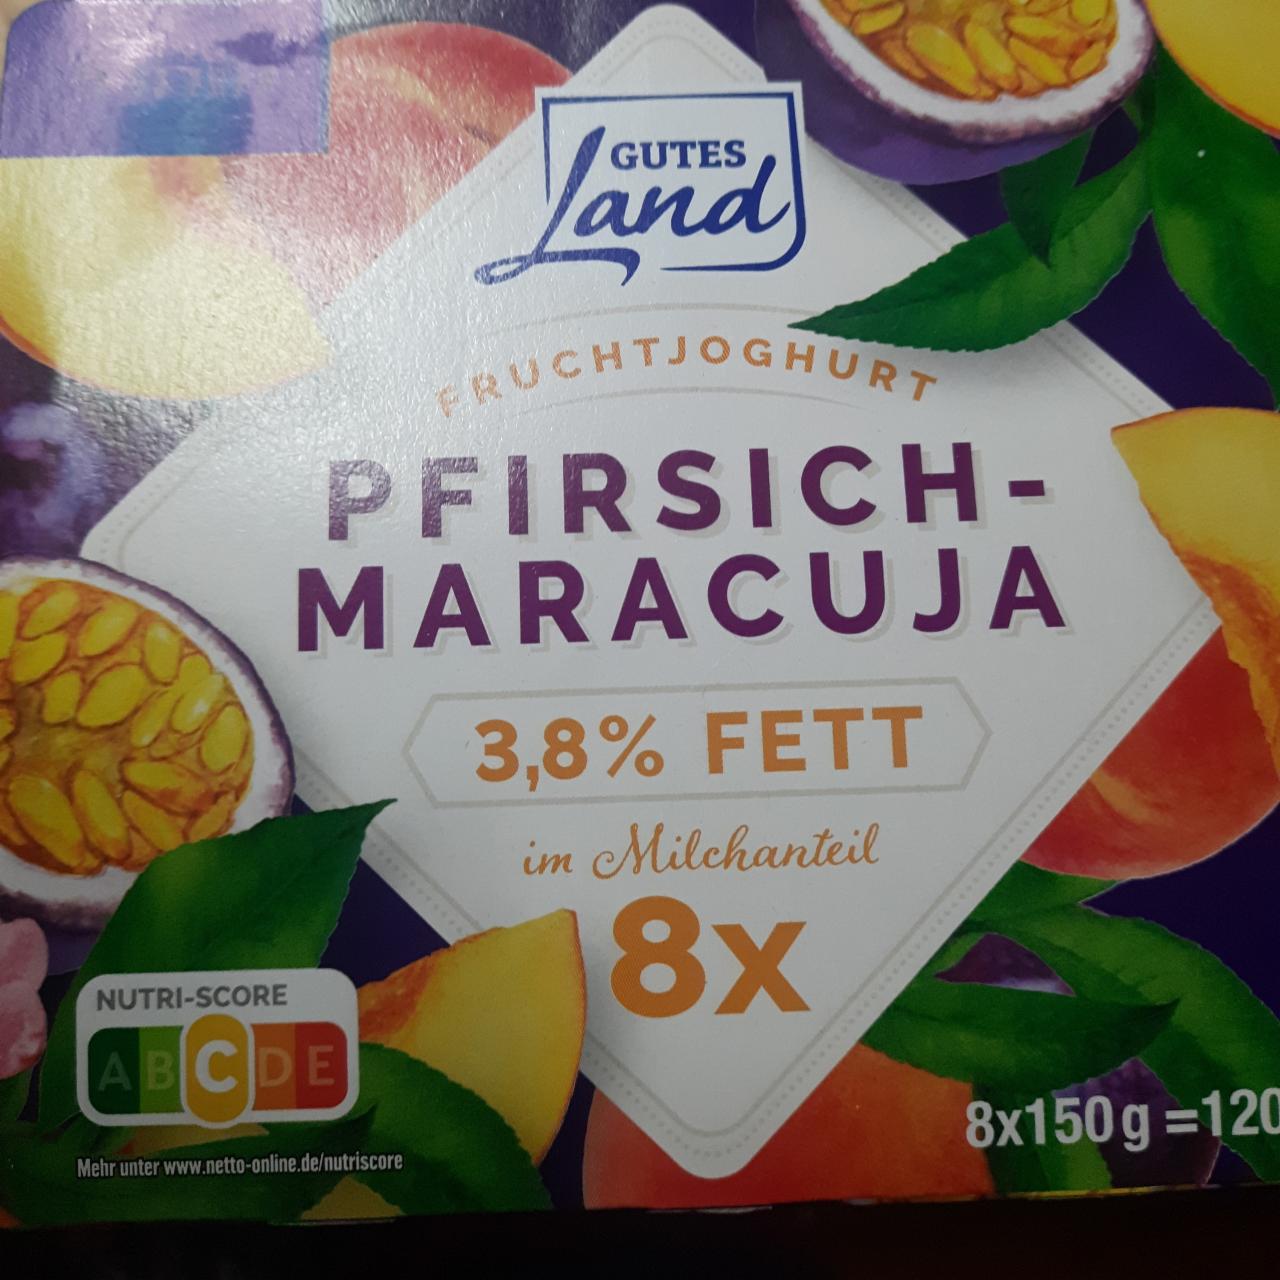 Fotografie - Pfirsich-maracuja Fruchtjoghurt gutes Land